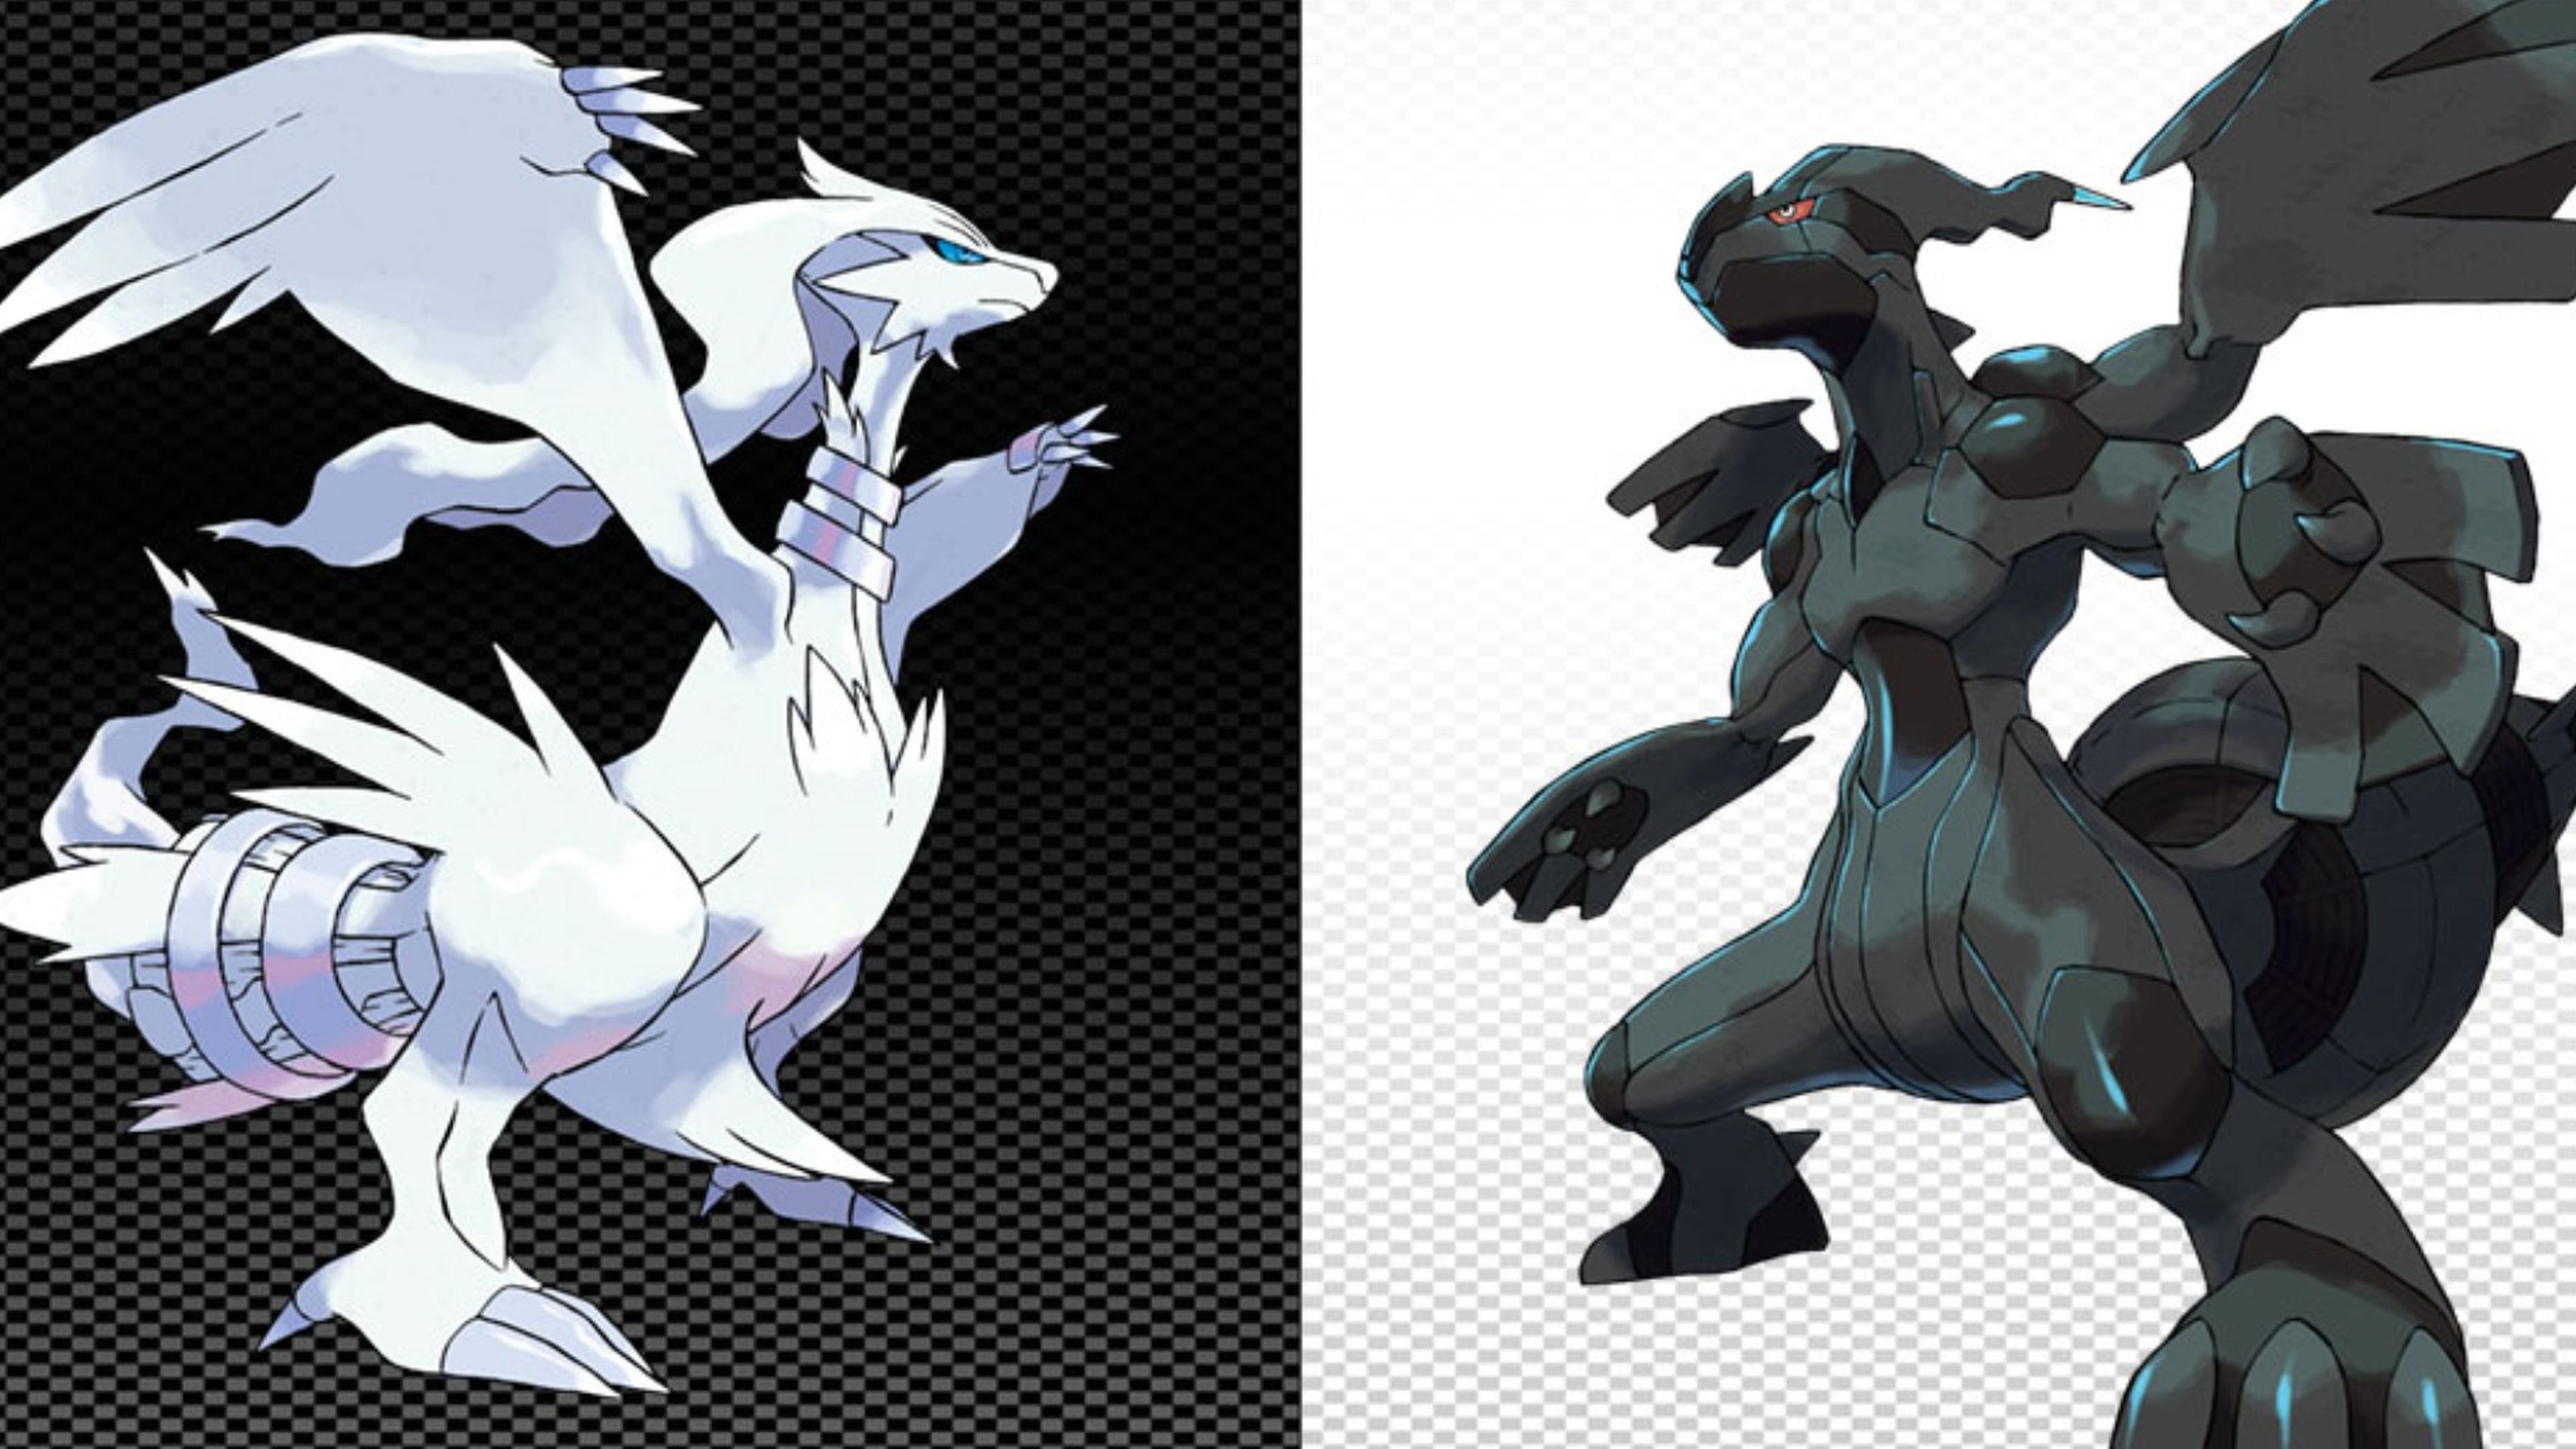 Pokémon Edición Negra y Pokémon Edición Blanca